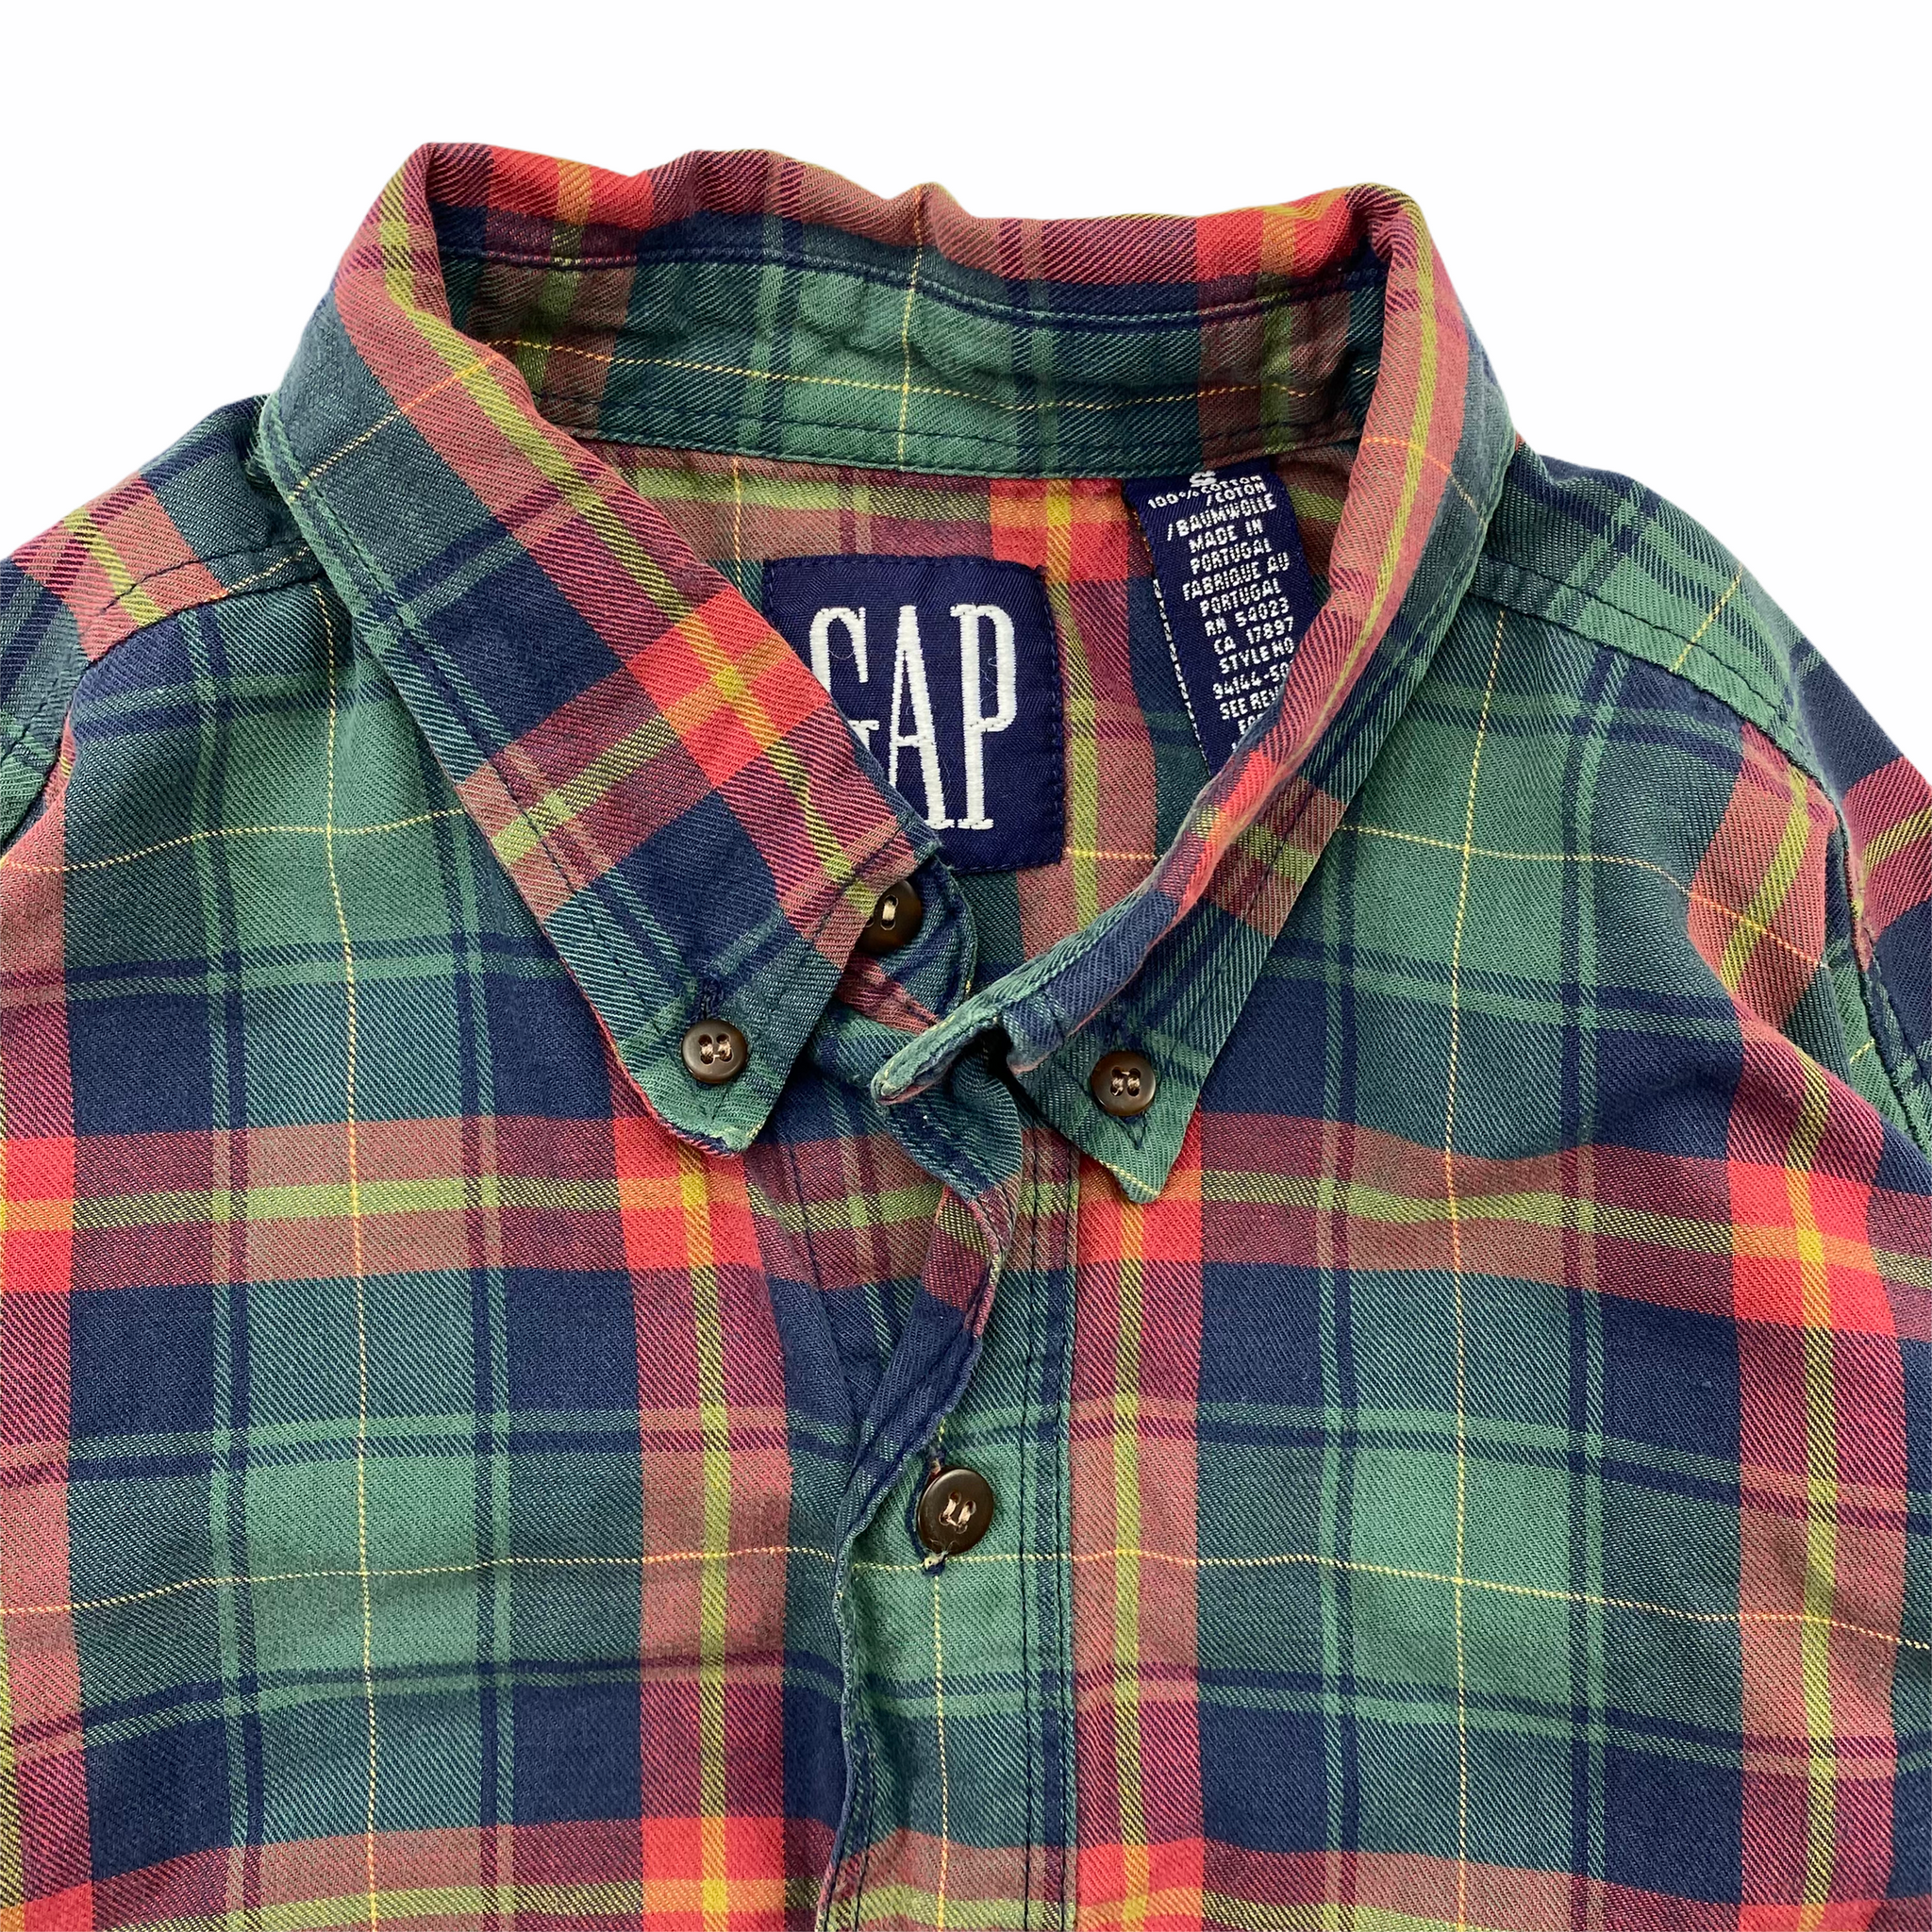 90s Gap button down plaid shirt. Small